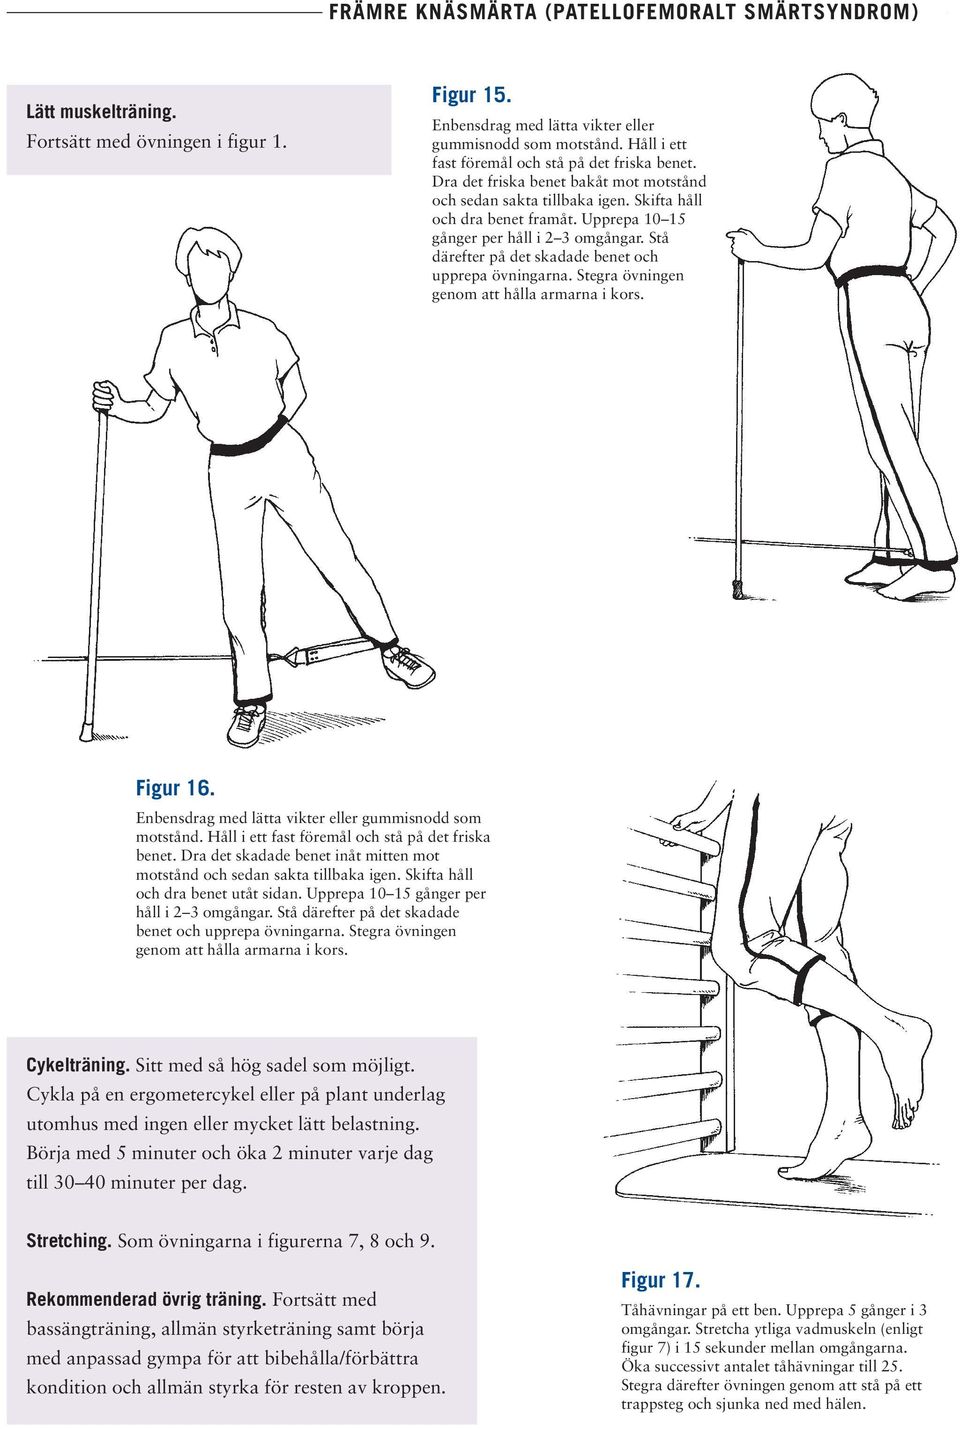 Stå därefter på det skadade benet och upprepa övningarna. Stegra övningen genom att hålla armarna i kors. Figur 16. Enbensdrag med lätta vikter eller gummisnodd som motstånd.